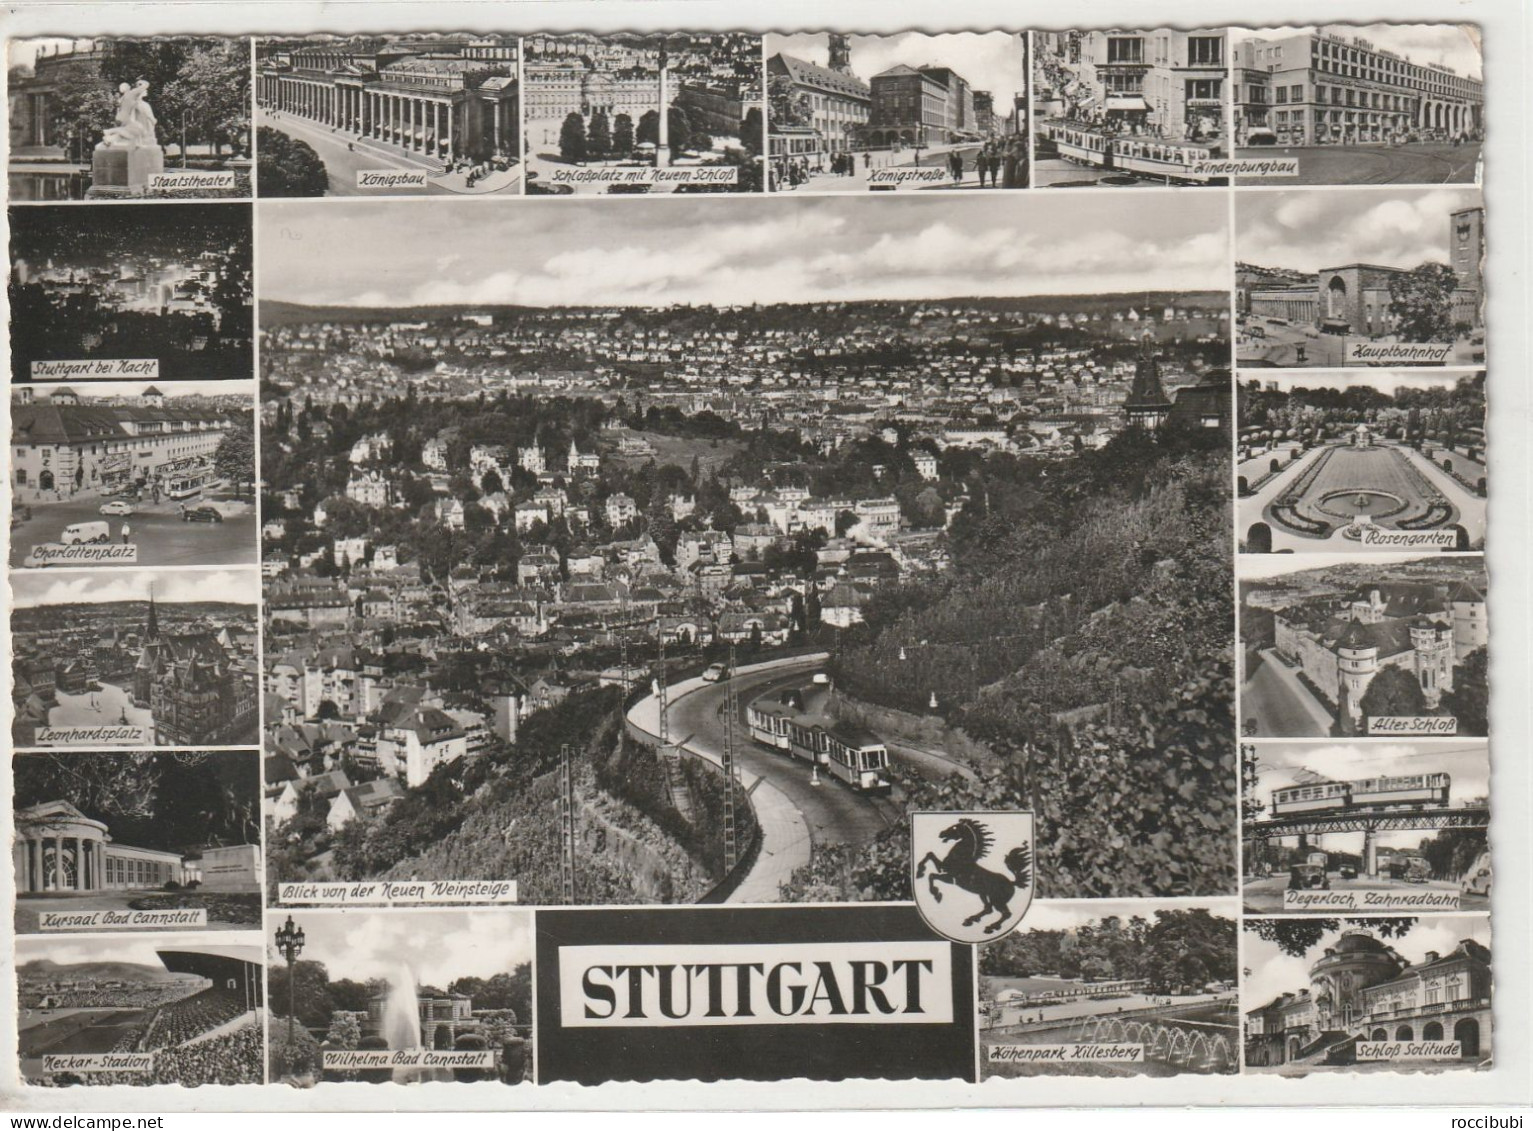 Stuttgart - Stuttgart